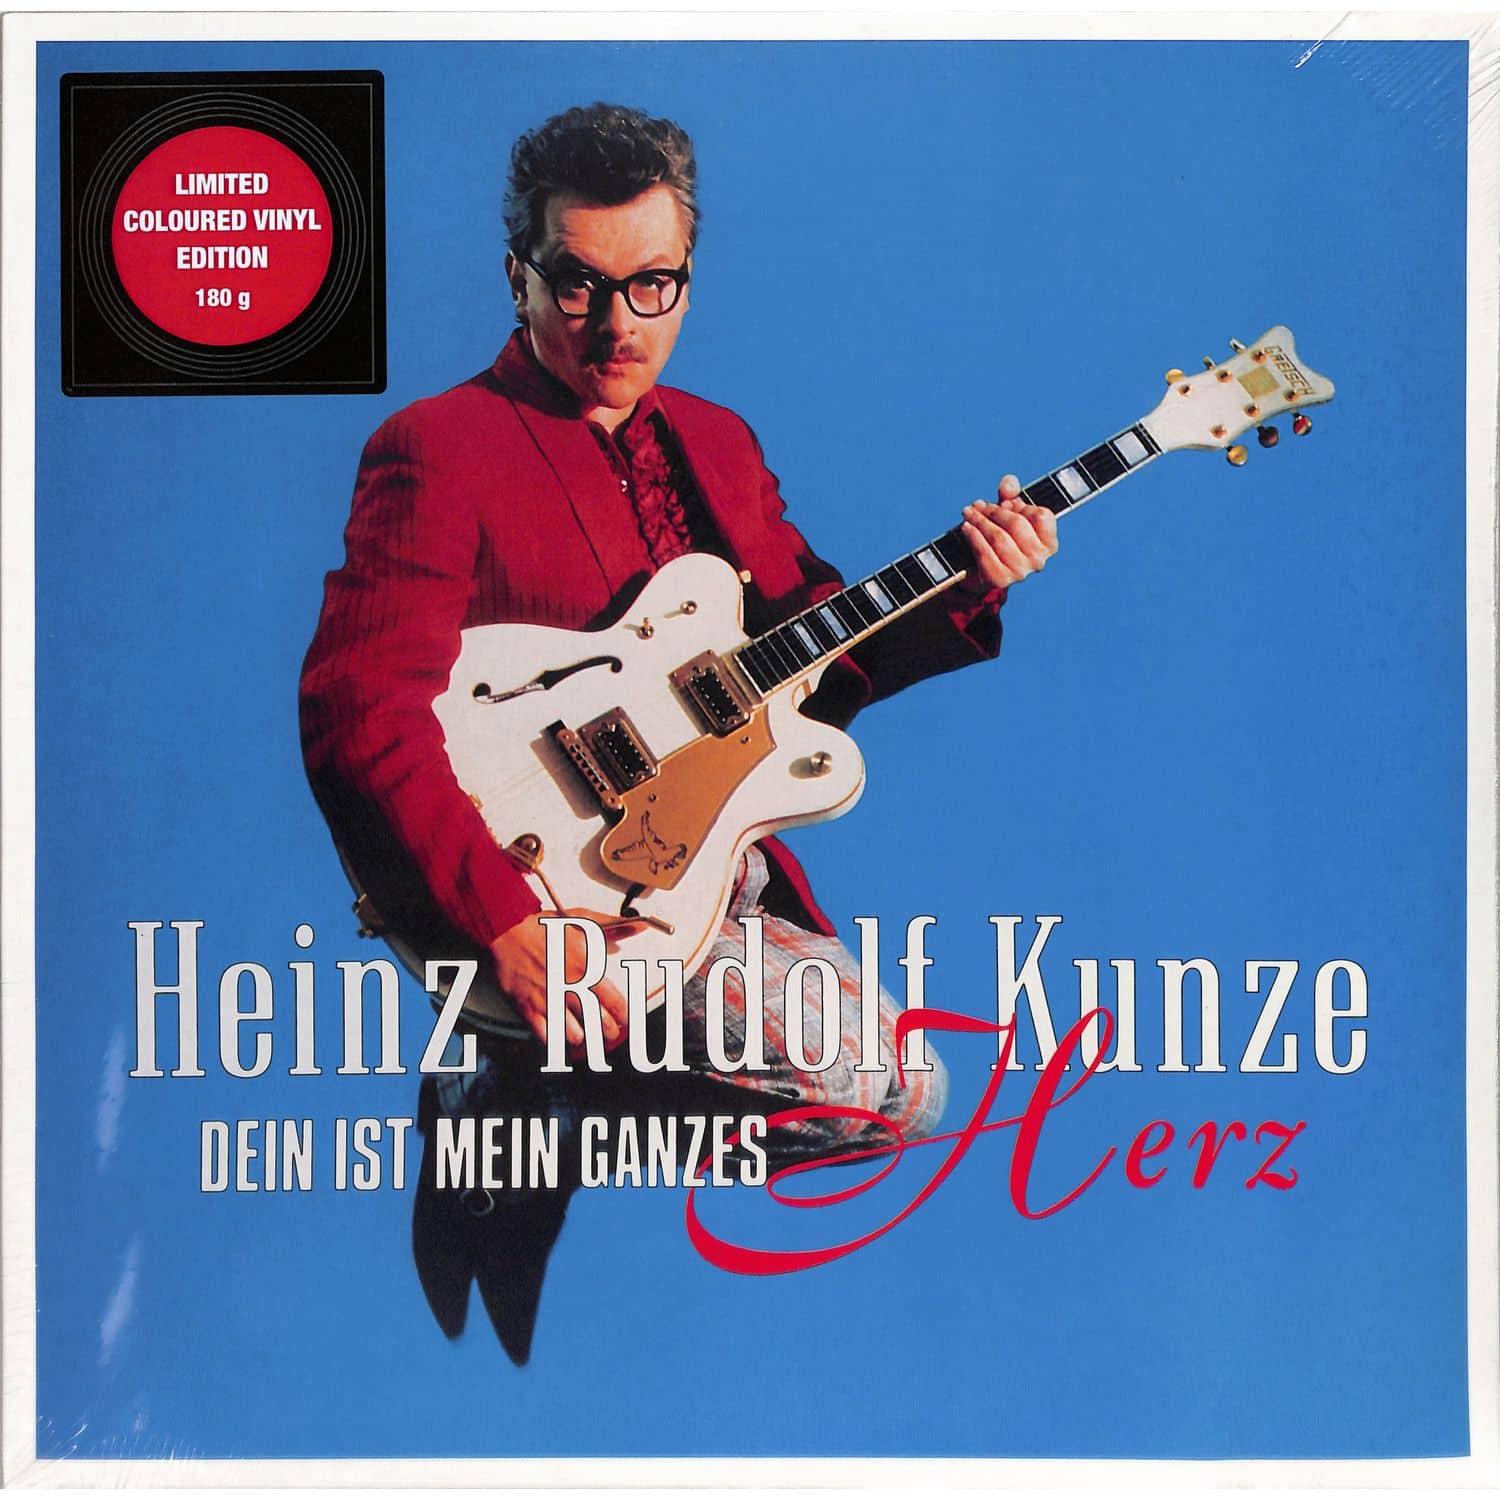 Heinz Rudolf Kunze - DEIN IST MEIN GANZES HERZ 